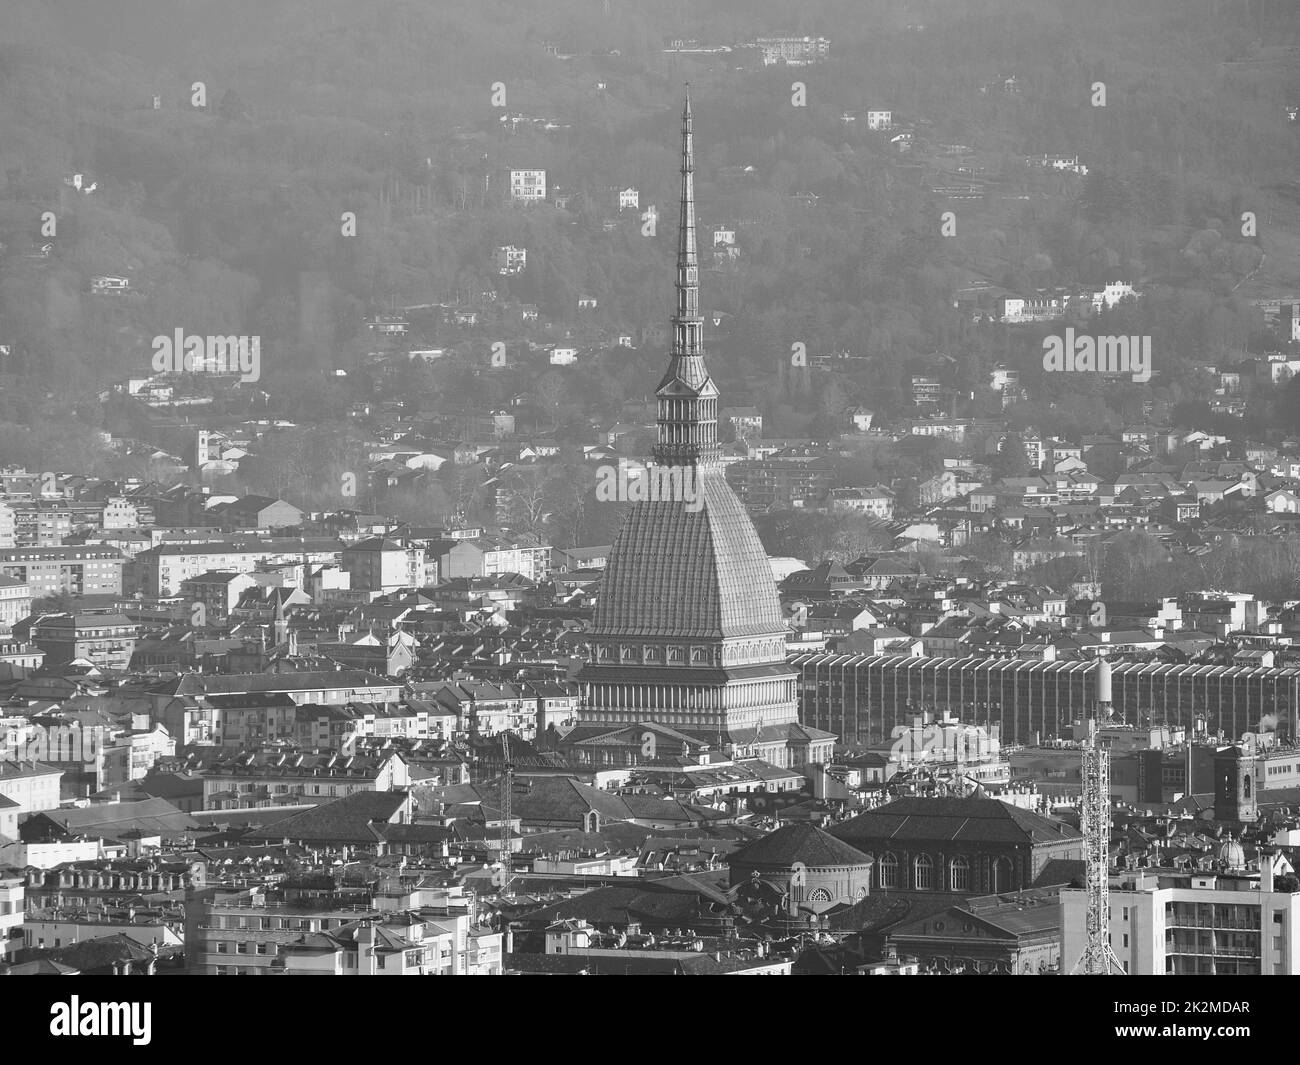 Vista aérea de Turín en blanco y negro Foto de stock